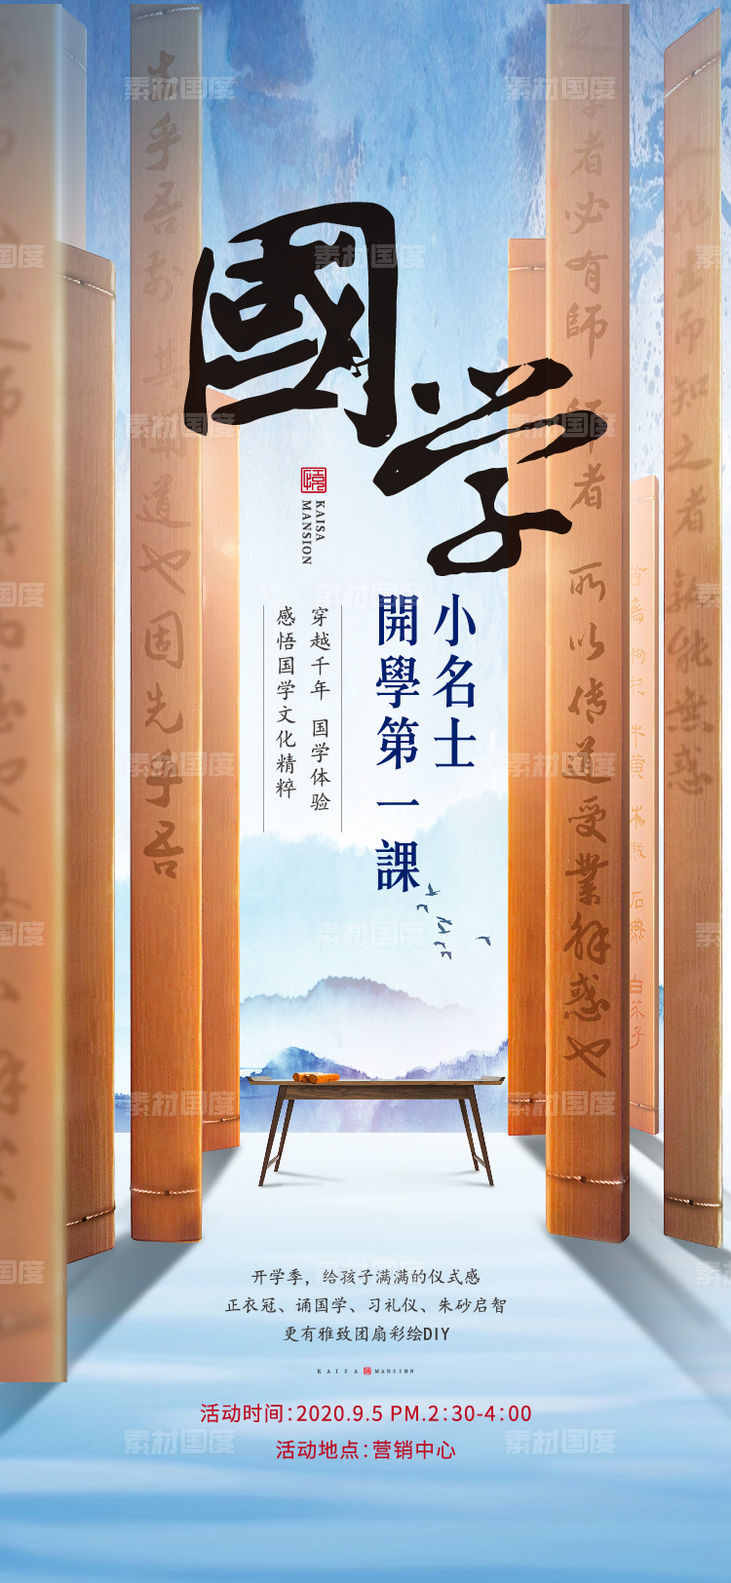 中式国学暖场活动海报